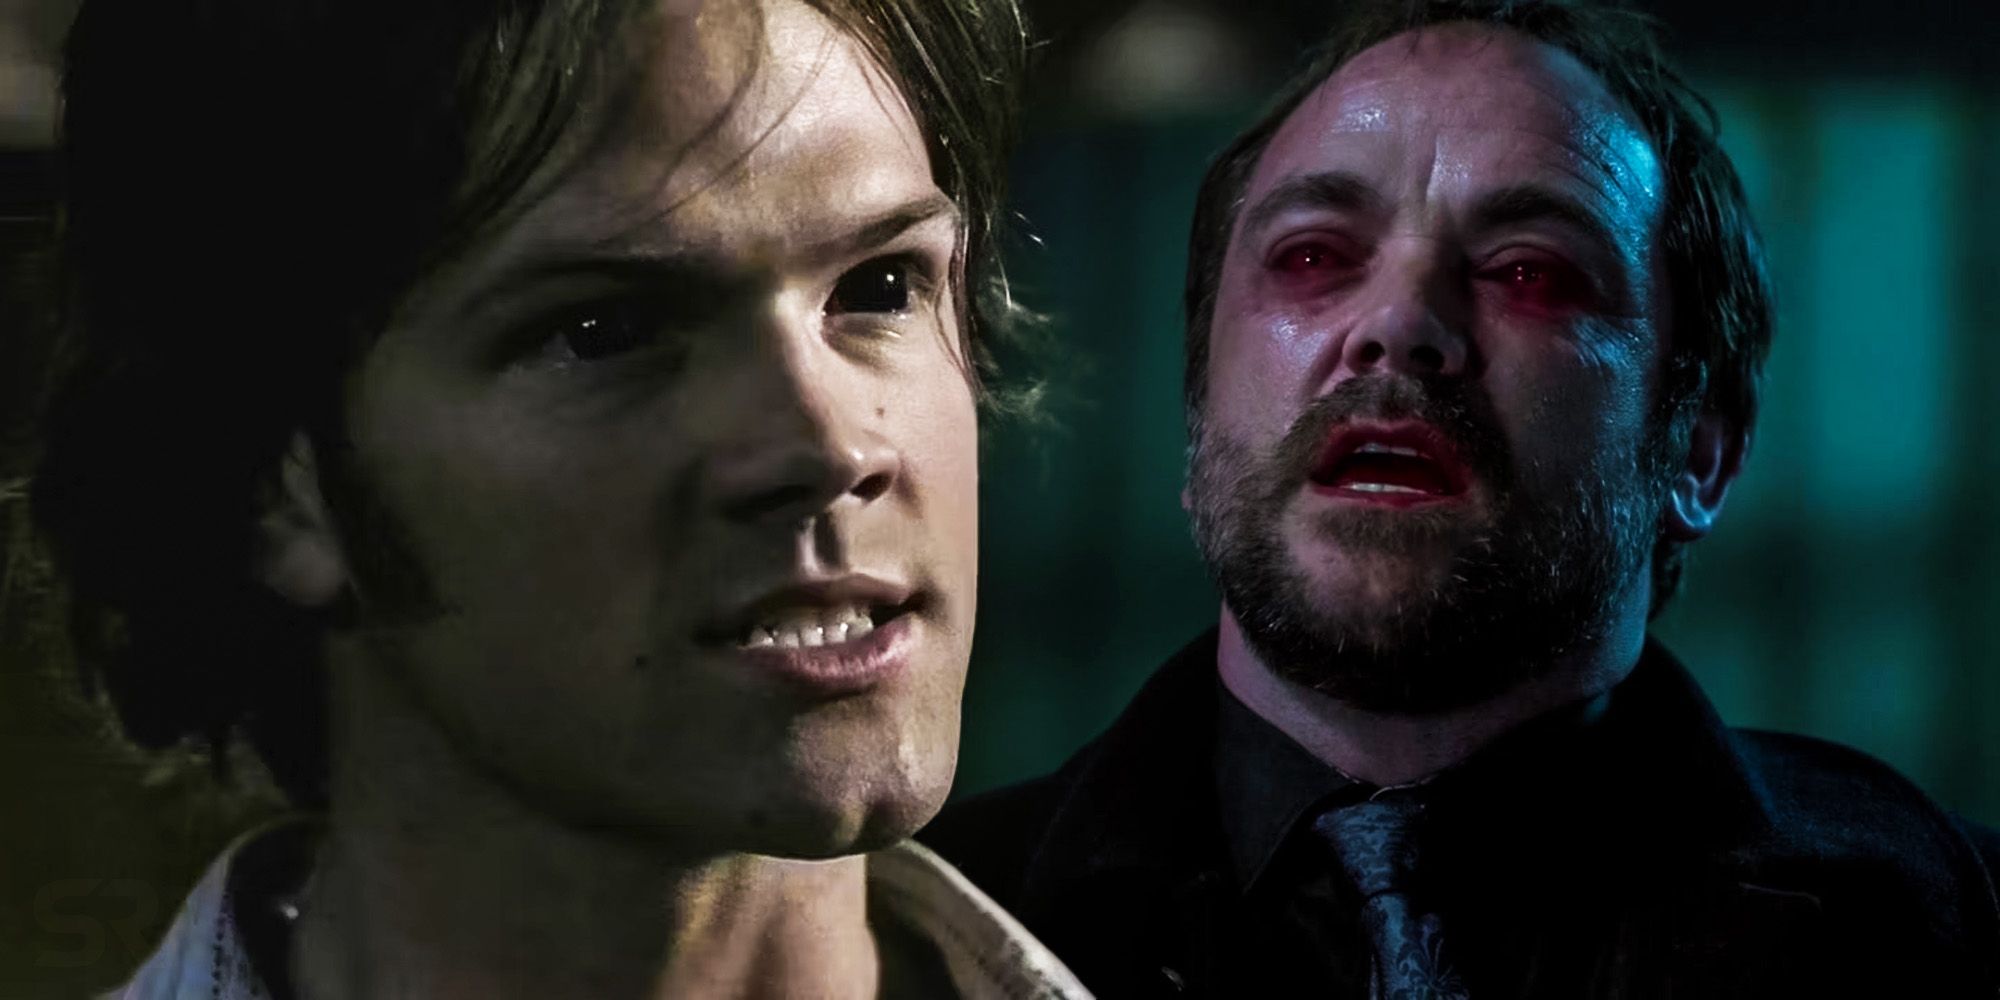 ¿Por qué los ojos de Crowley eran rojos en lugar de negros en Supernatural?